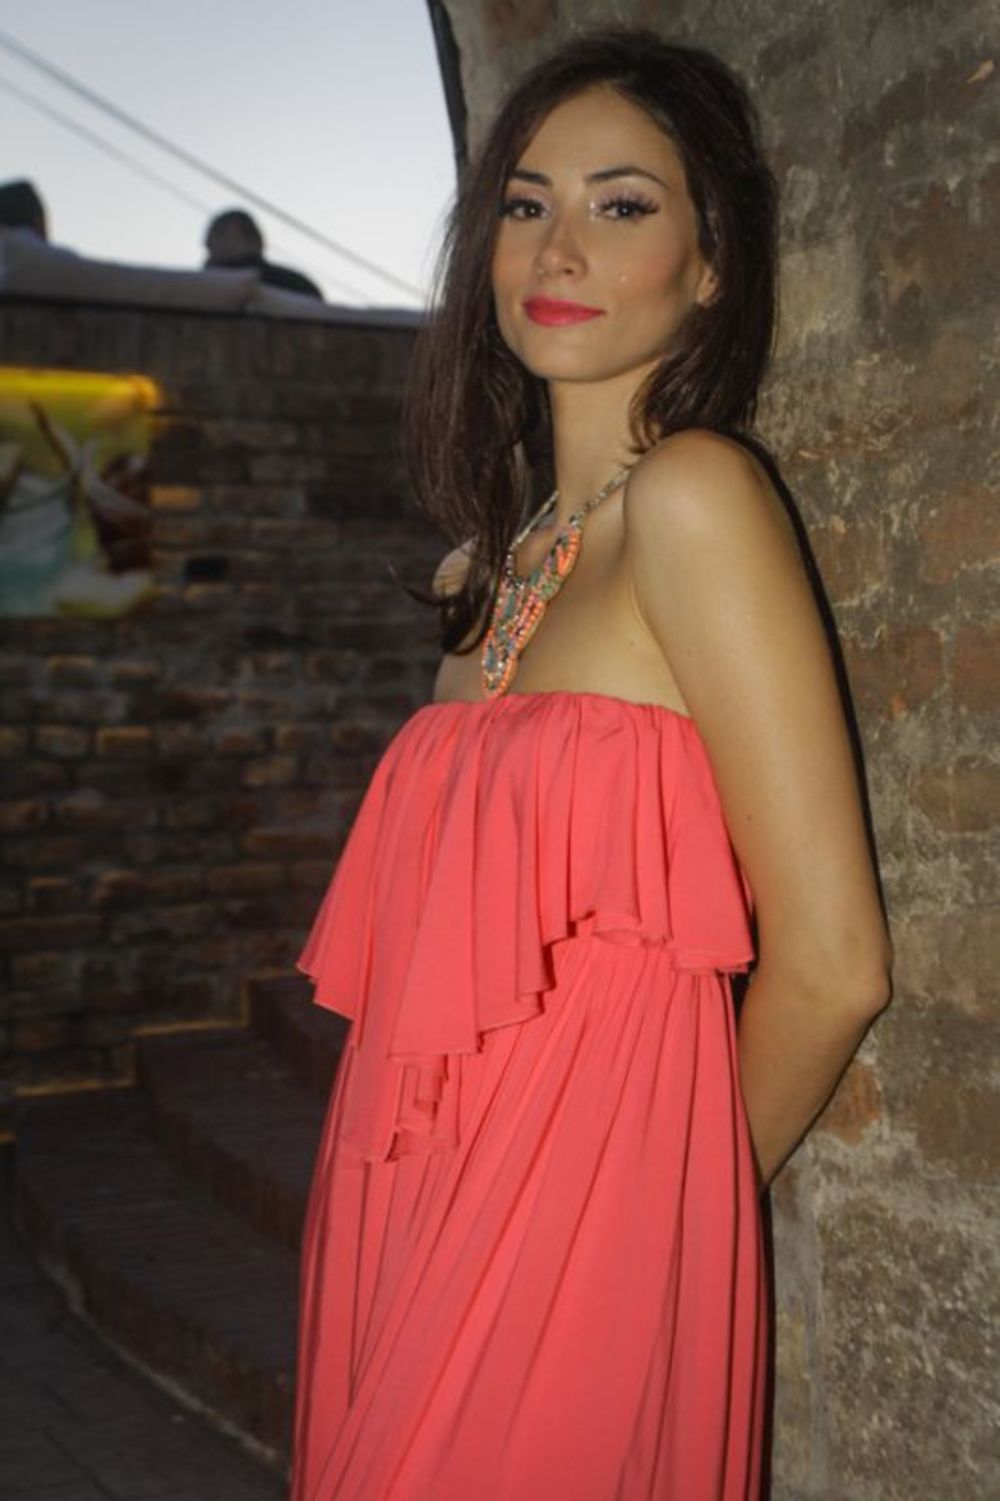 Finalistkinja Prvog glasa Srbije, Sanja Dimitrijević promovisala je svoj prvi spot za numeru La fiesta, a ceremonija je upriličena u klubu Terasa na Kalemegdanu.